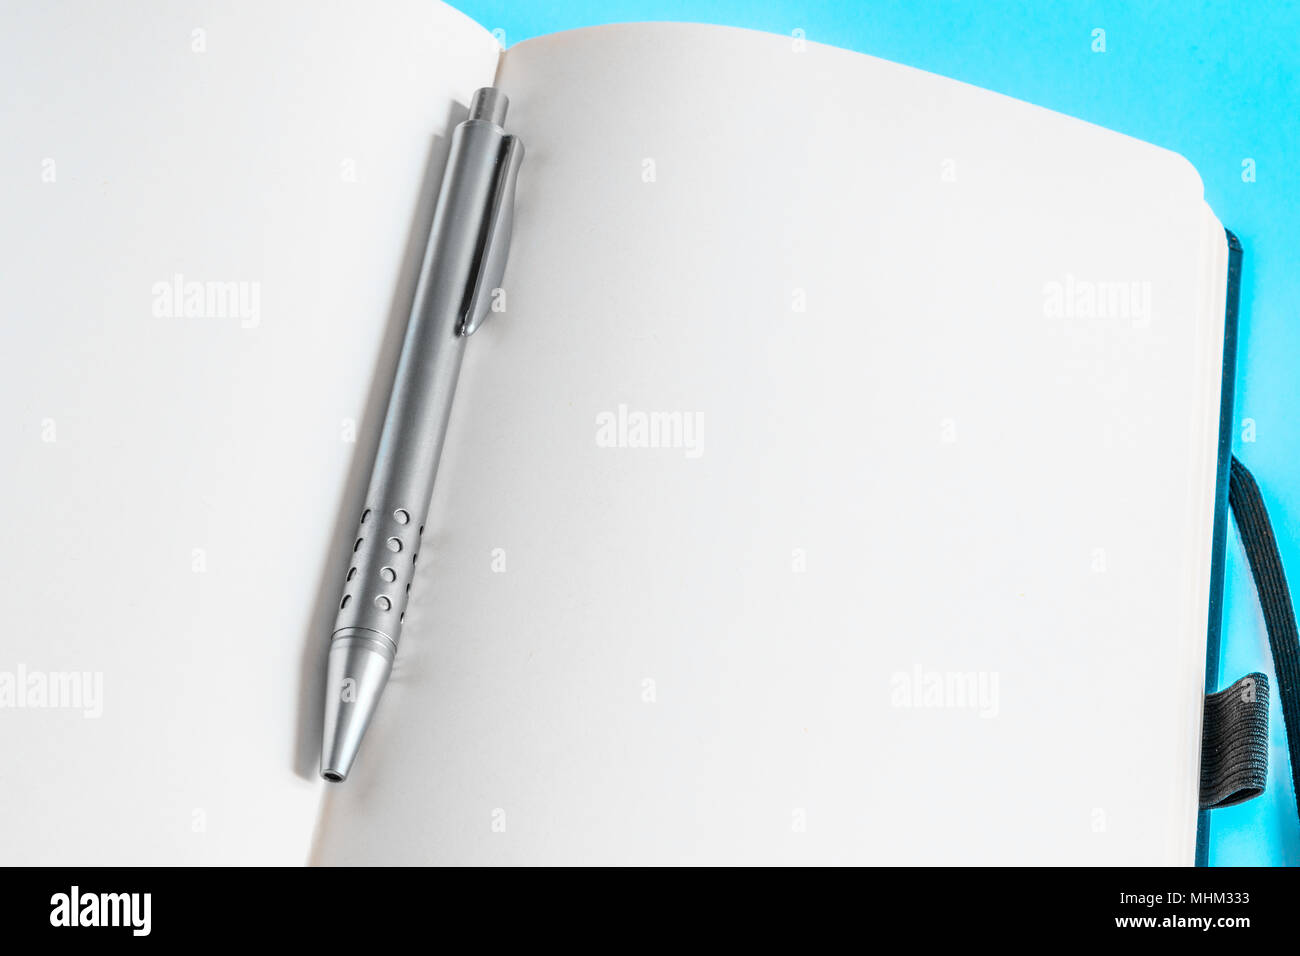 Un metallo penna biro sulle pagine vuote di un notebook su sfondo azzurro. Foto Stock